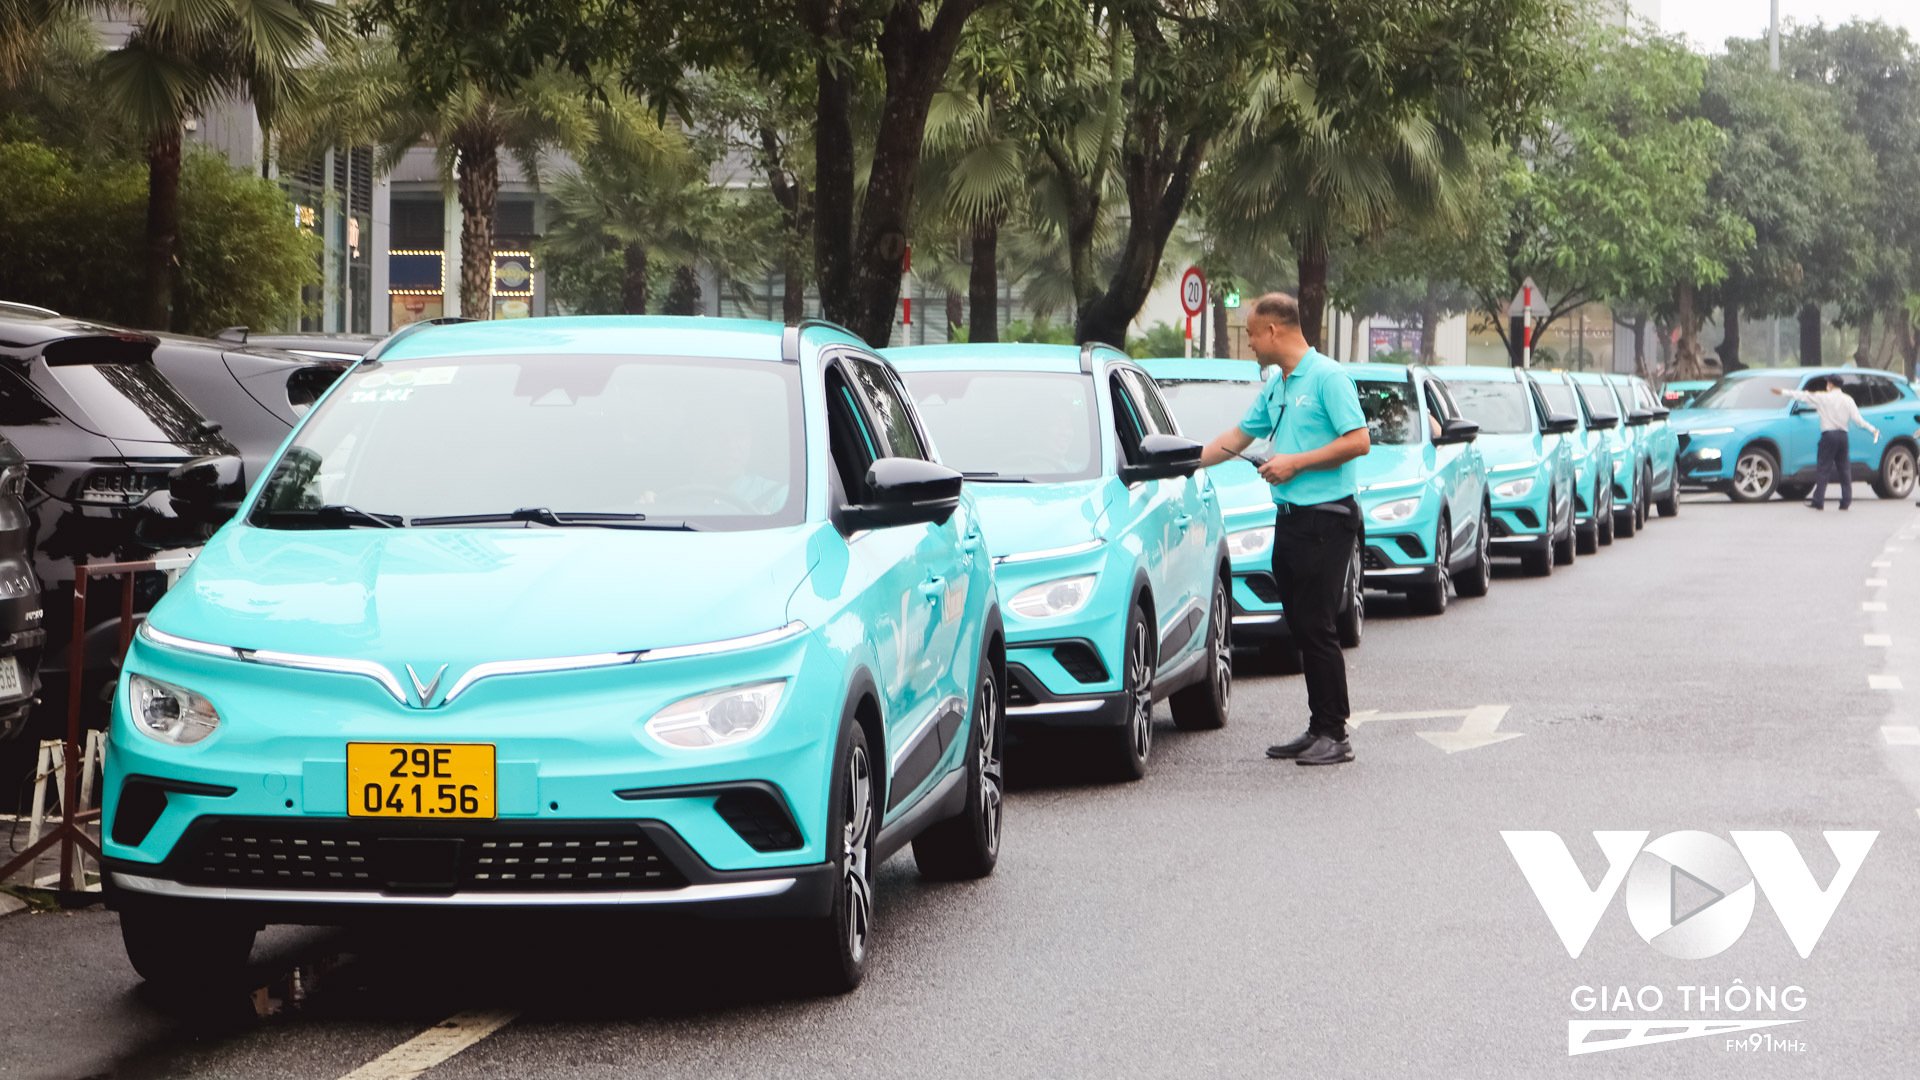 Sang tháng 5/2023, người dân có thể gọi Taxi Xanh SM thông qua dịch vụ BeVinFast trên nền tảng tiêu dùng đa dịch vụ Be. Xanh SM hướng đến cung cấp cho người sử dụng 2 lựa chọn dịch vụ là GreenCar (taxi tiêu chuẩn) và LuxuryCar (taxi cao cấp). Trong đó, GreenCar sử dụng Vinfast VFe34 với màu xanh Cyan đặc trưng và LuxuryCar sử dụng Vinfast VF8 với màu sơn nguyên bản.